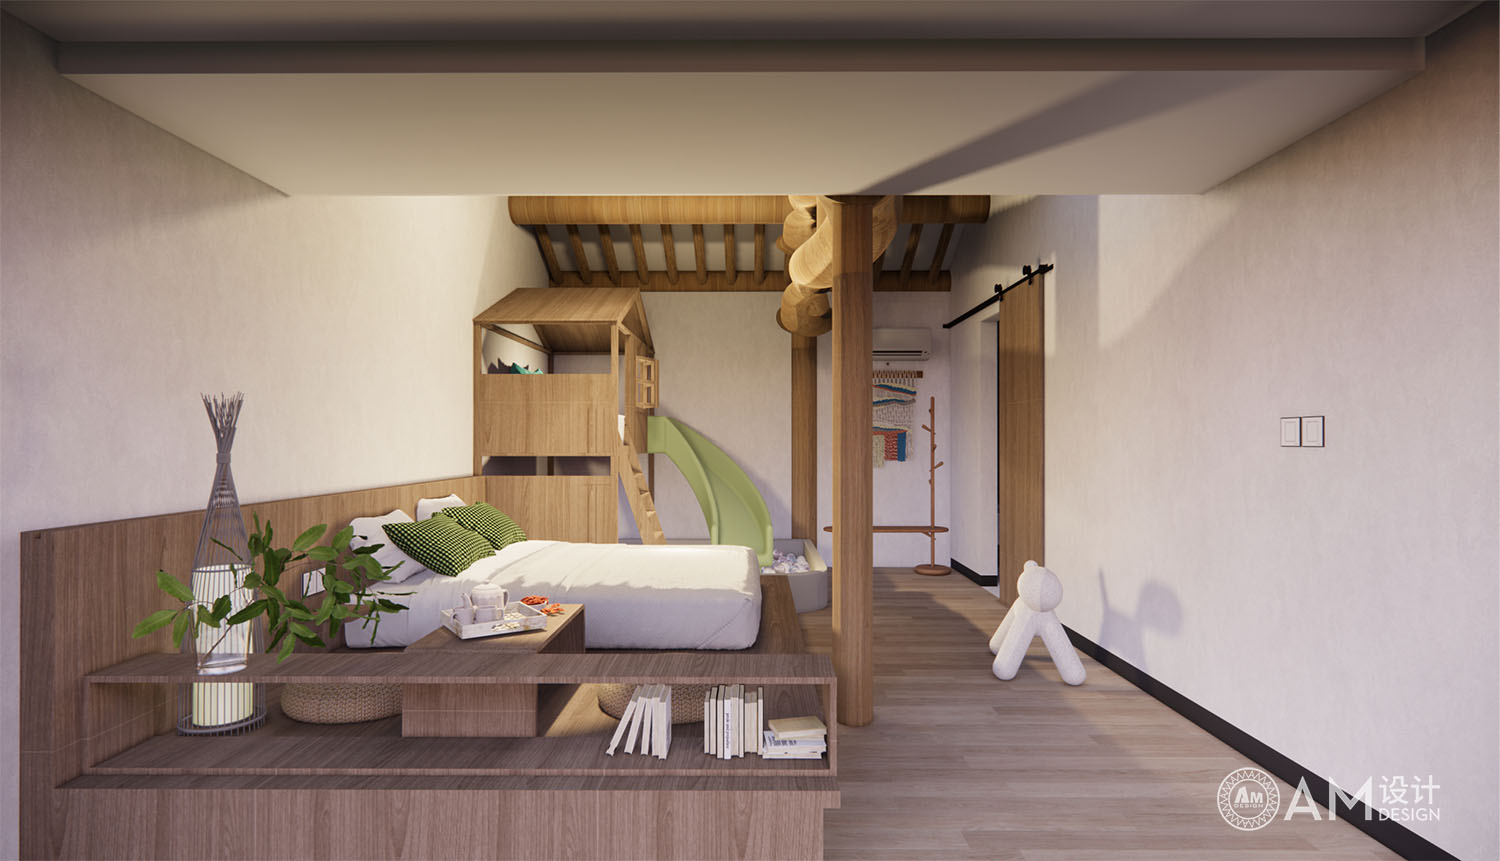 AM | Design of parent child guest room in Beijing Hetian courtyard